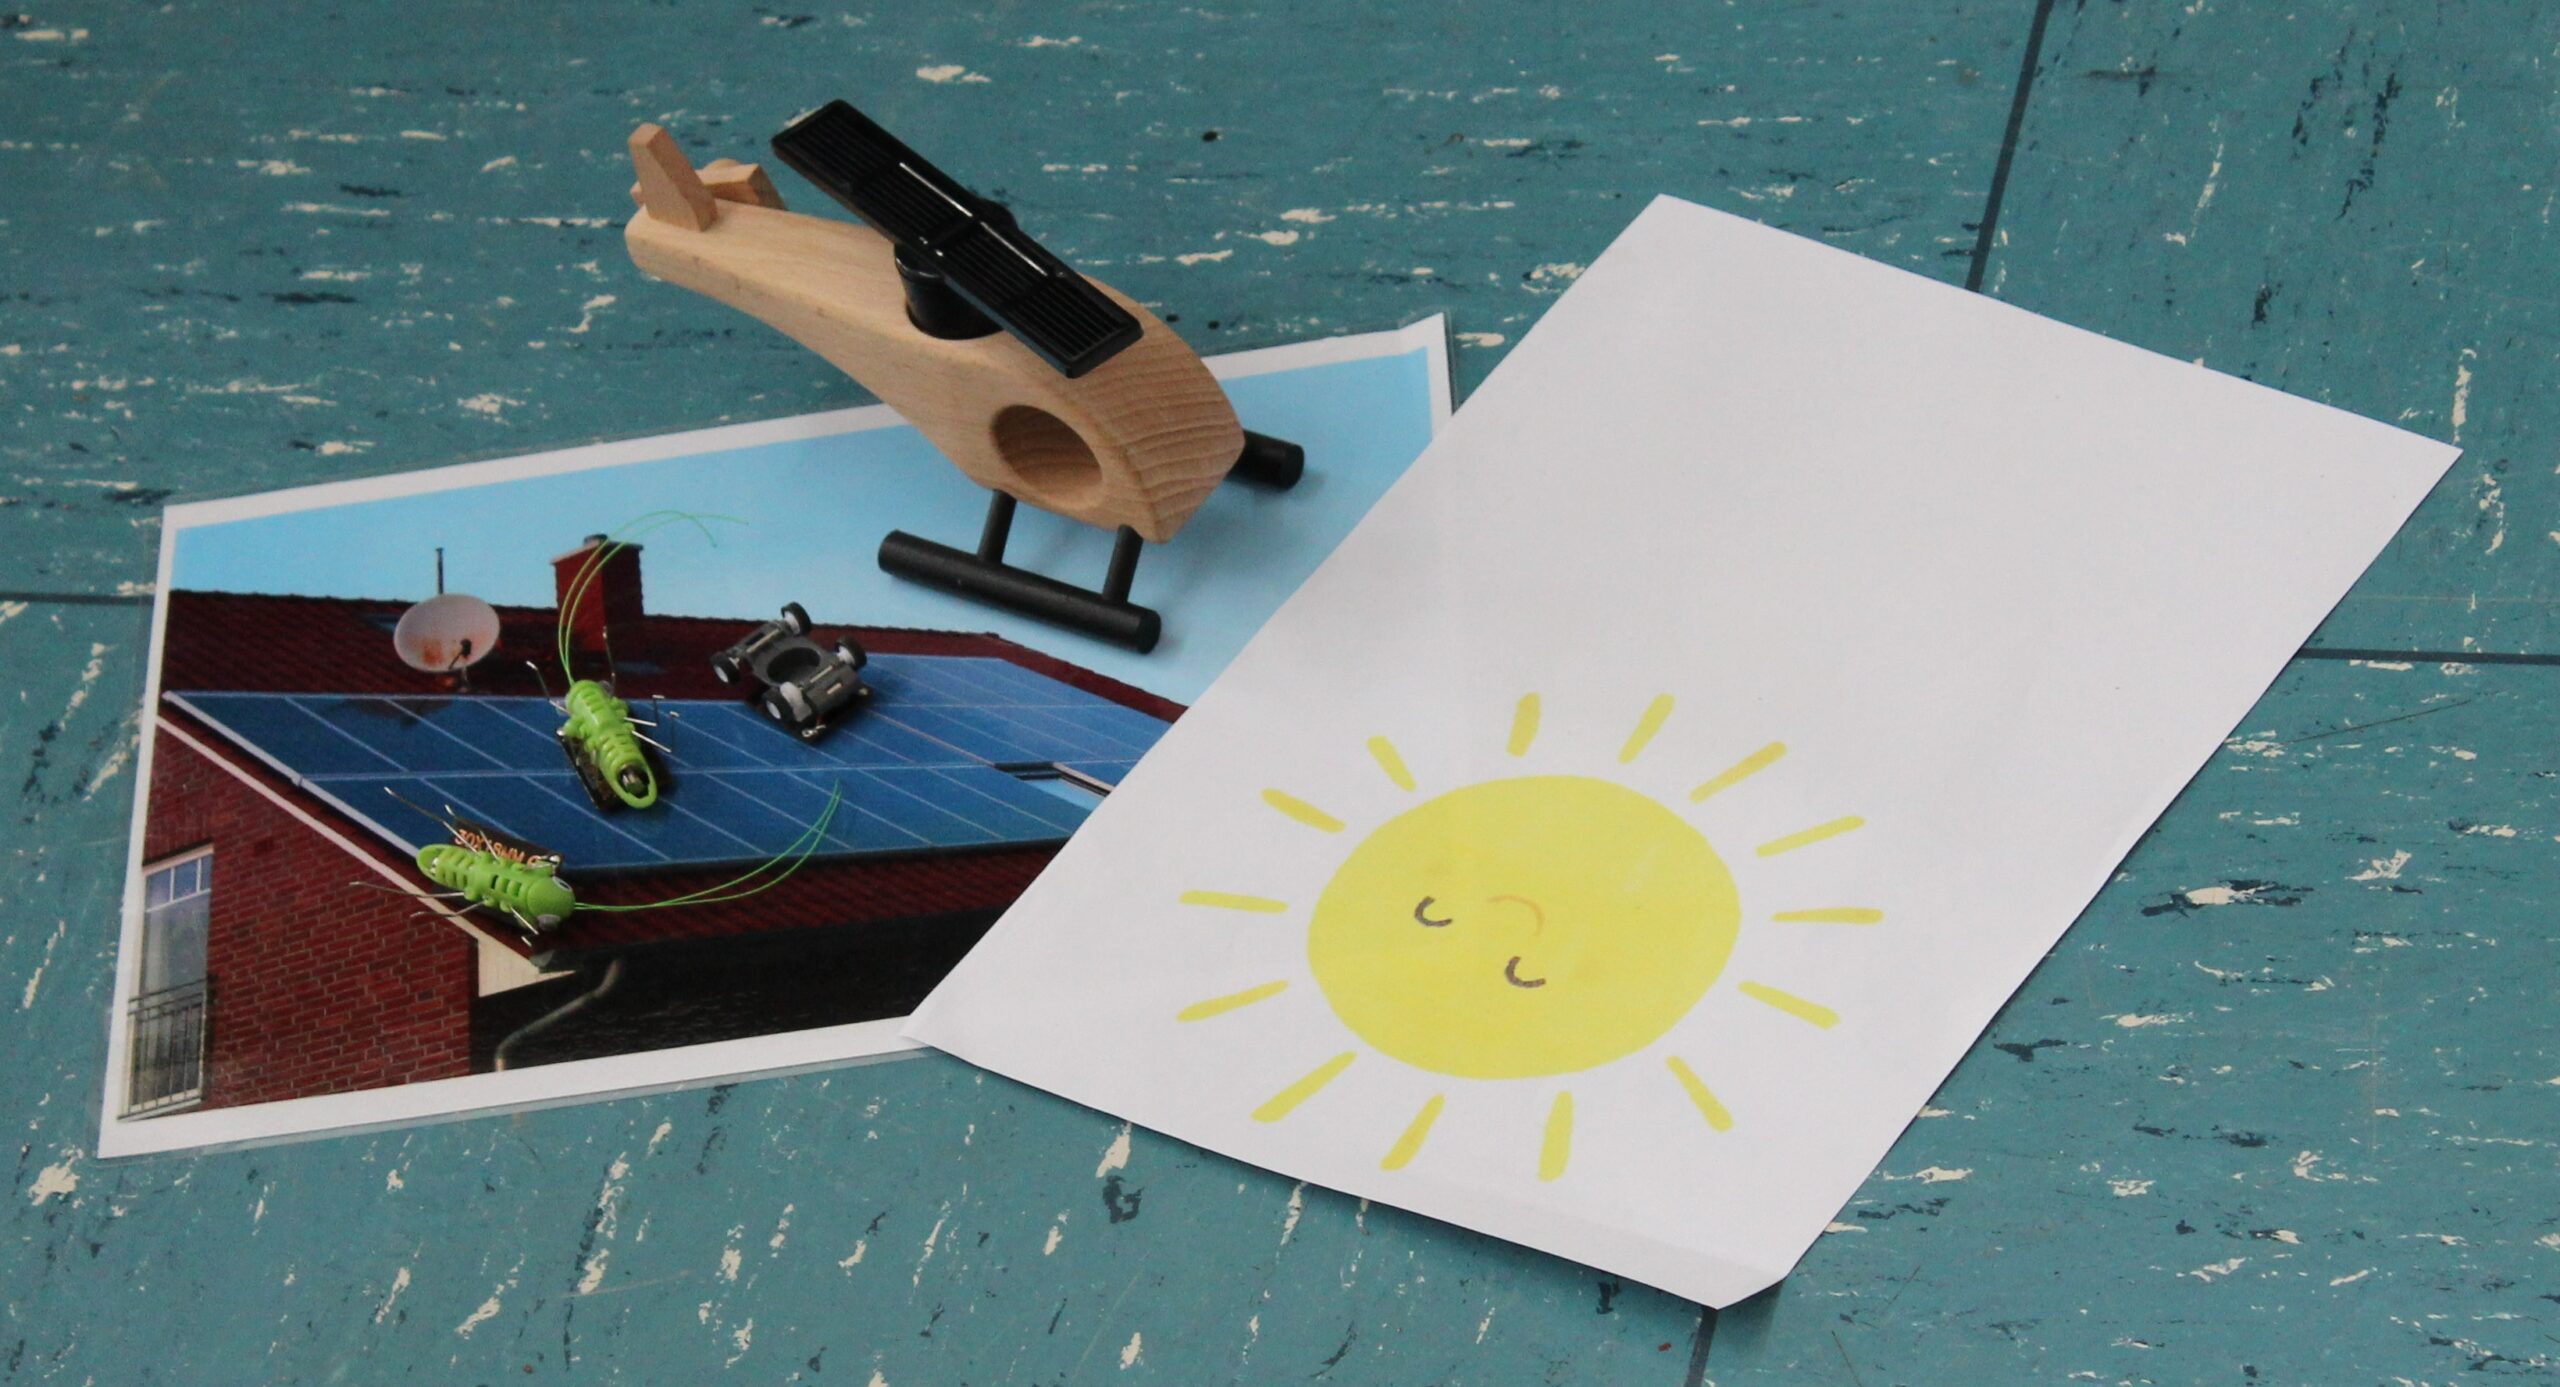 Ein Solarhubschrauber steht auf dem Boden neben einem Bild einer Sonne.